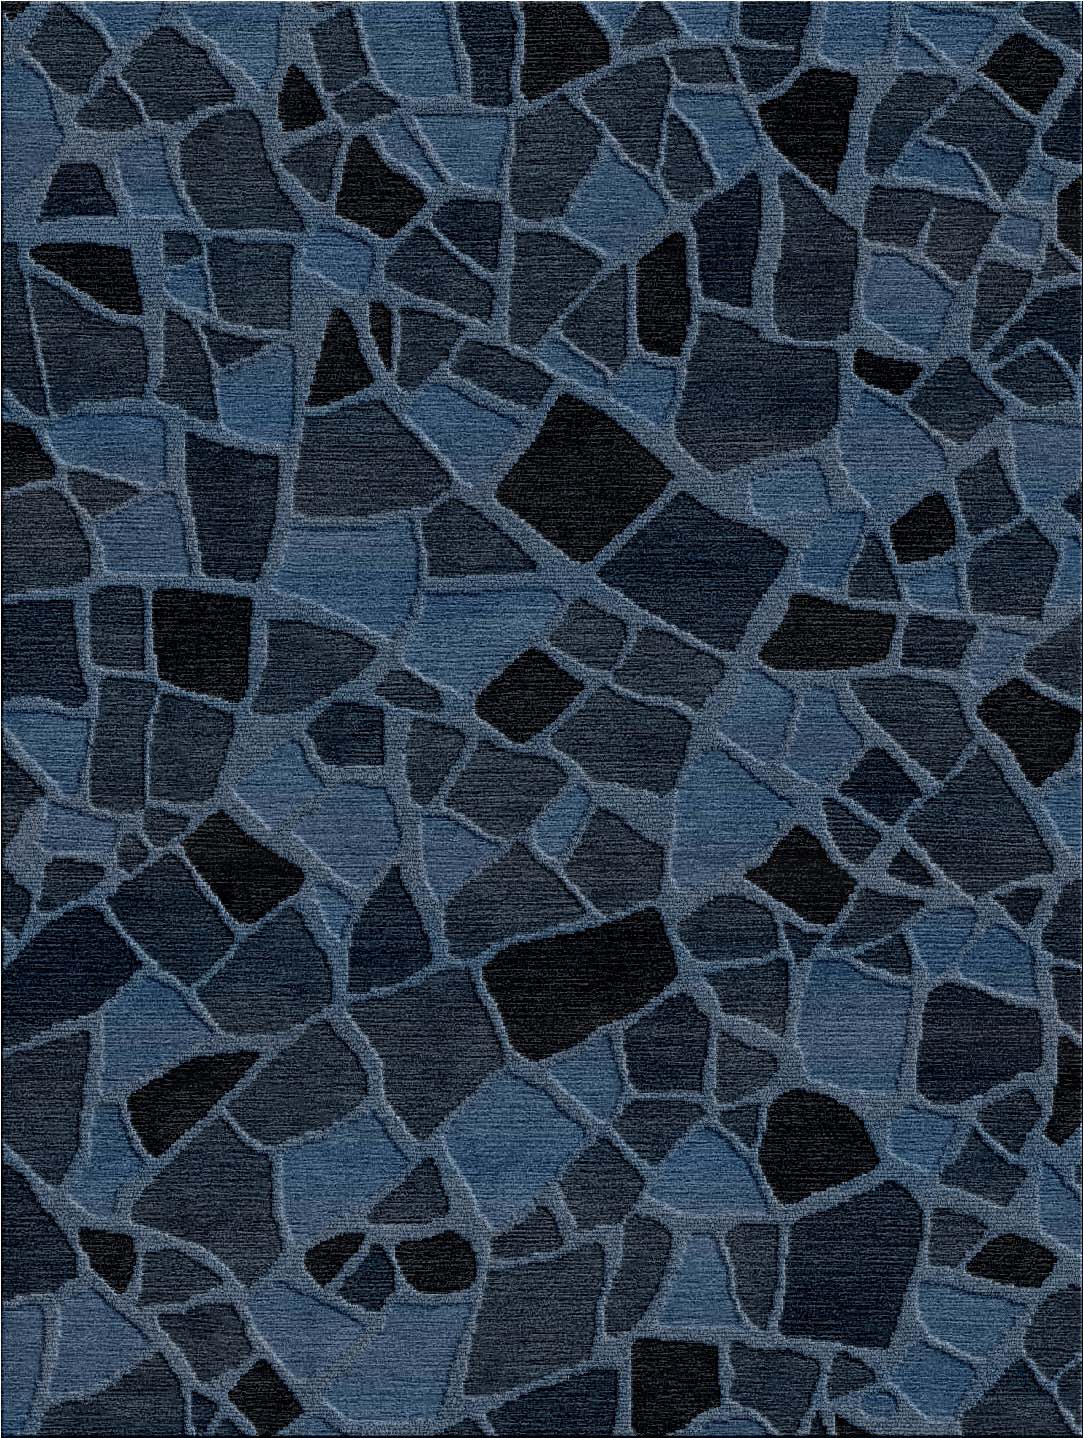 Cadrys Perimeters Mosaic Ocean Blue